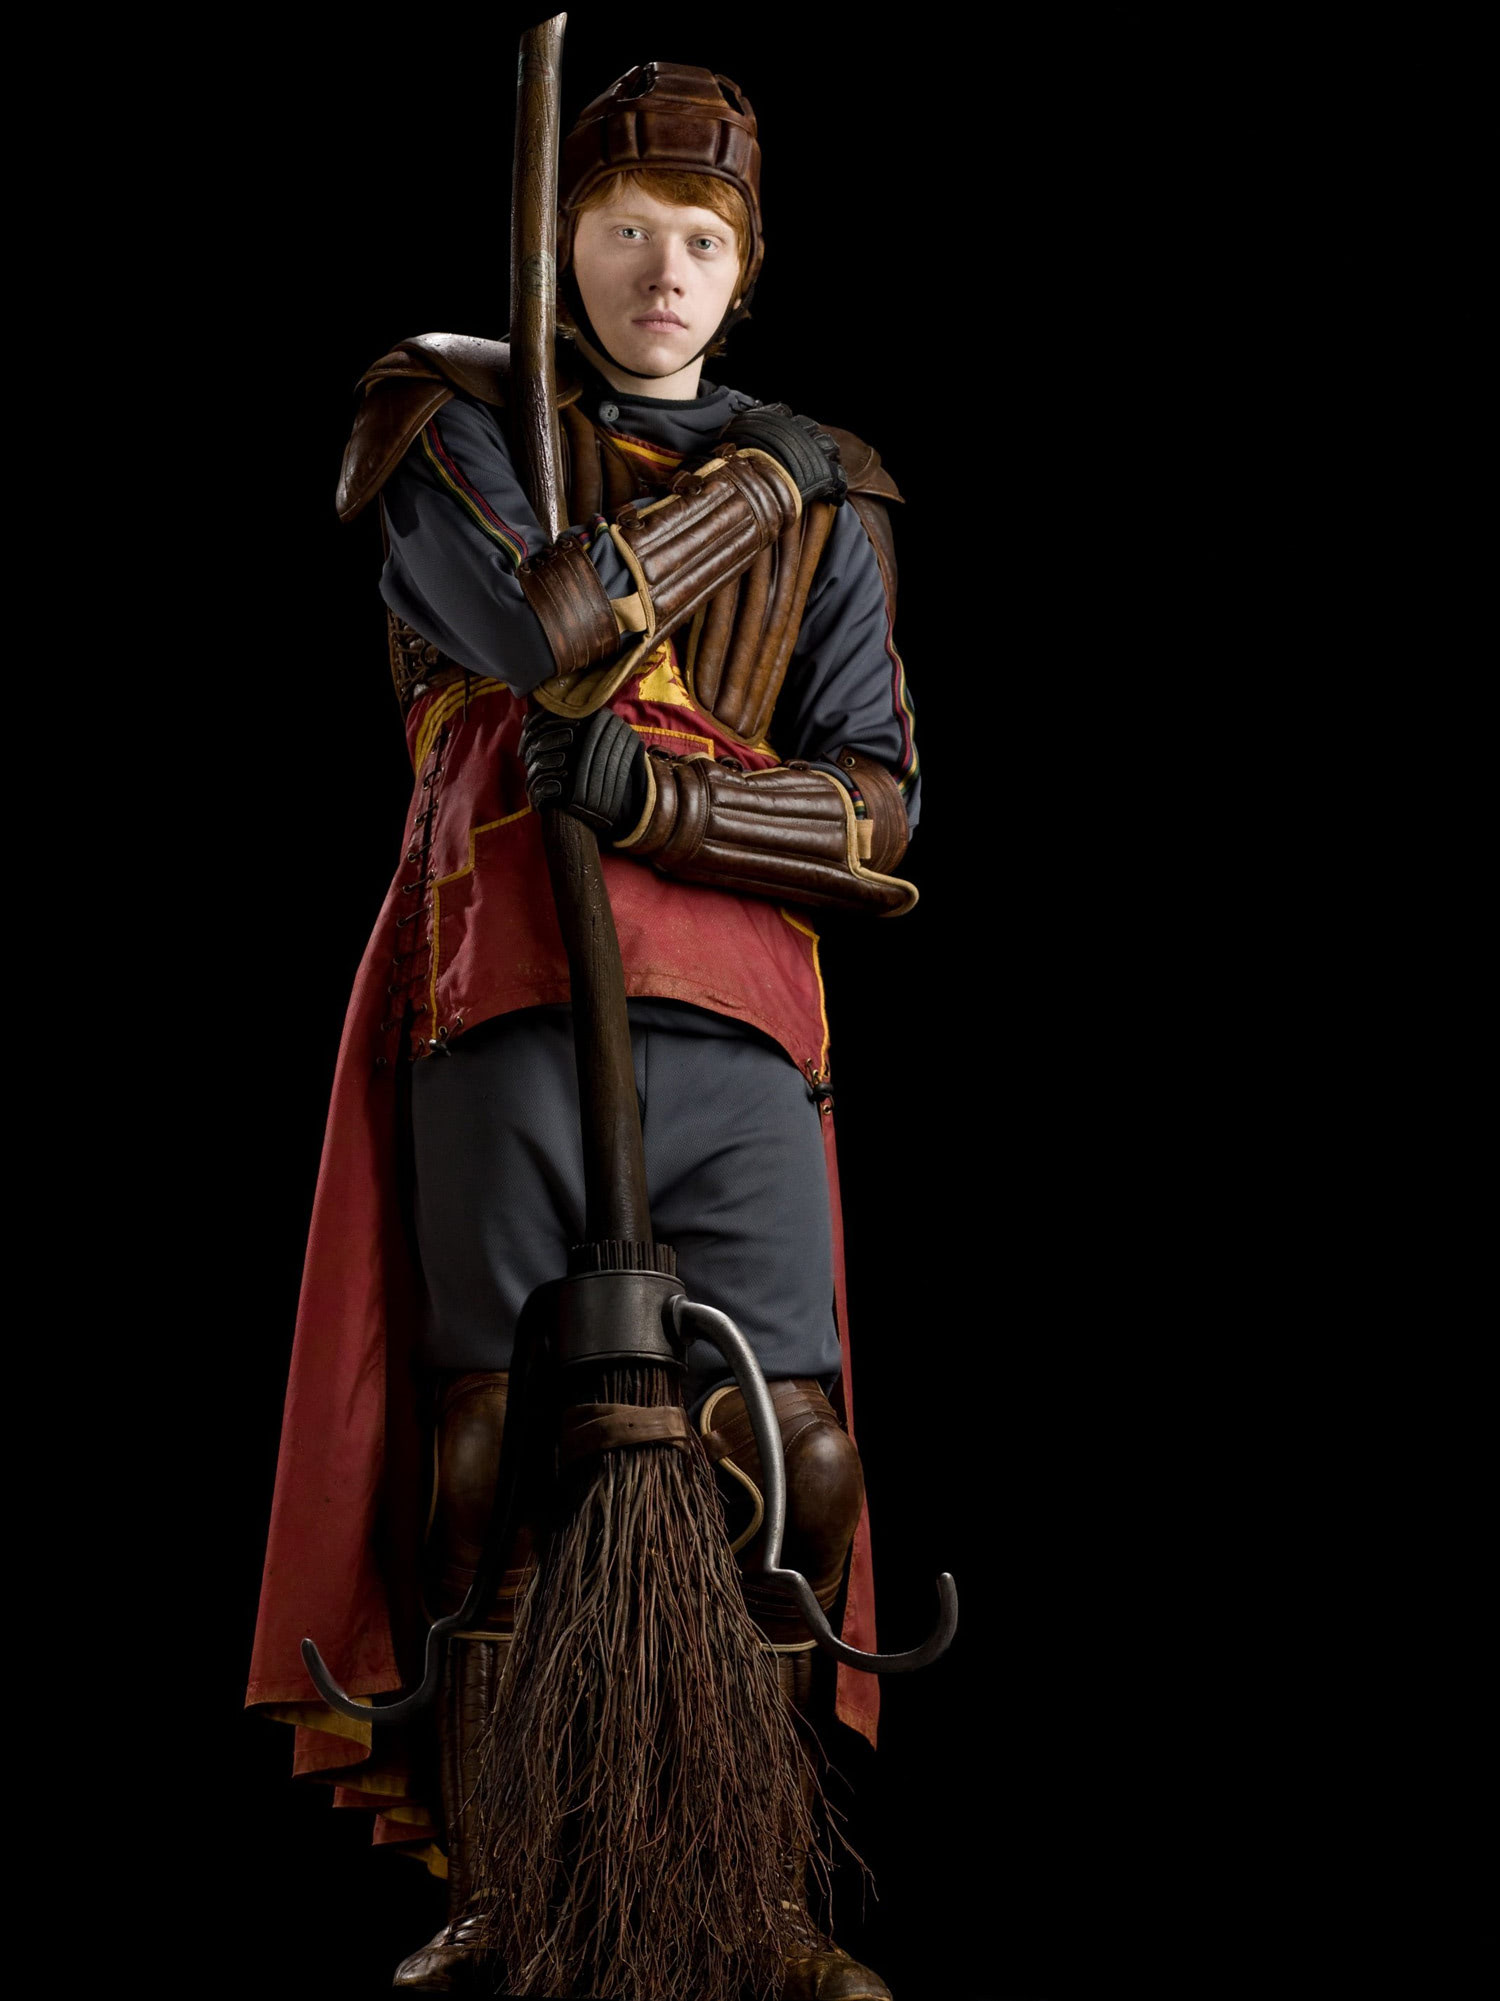 Portrait of Ron Weasley in Quidditch robes